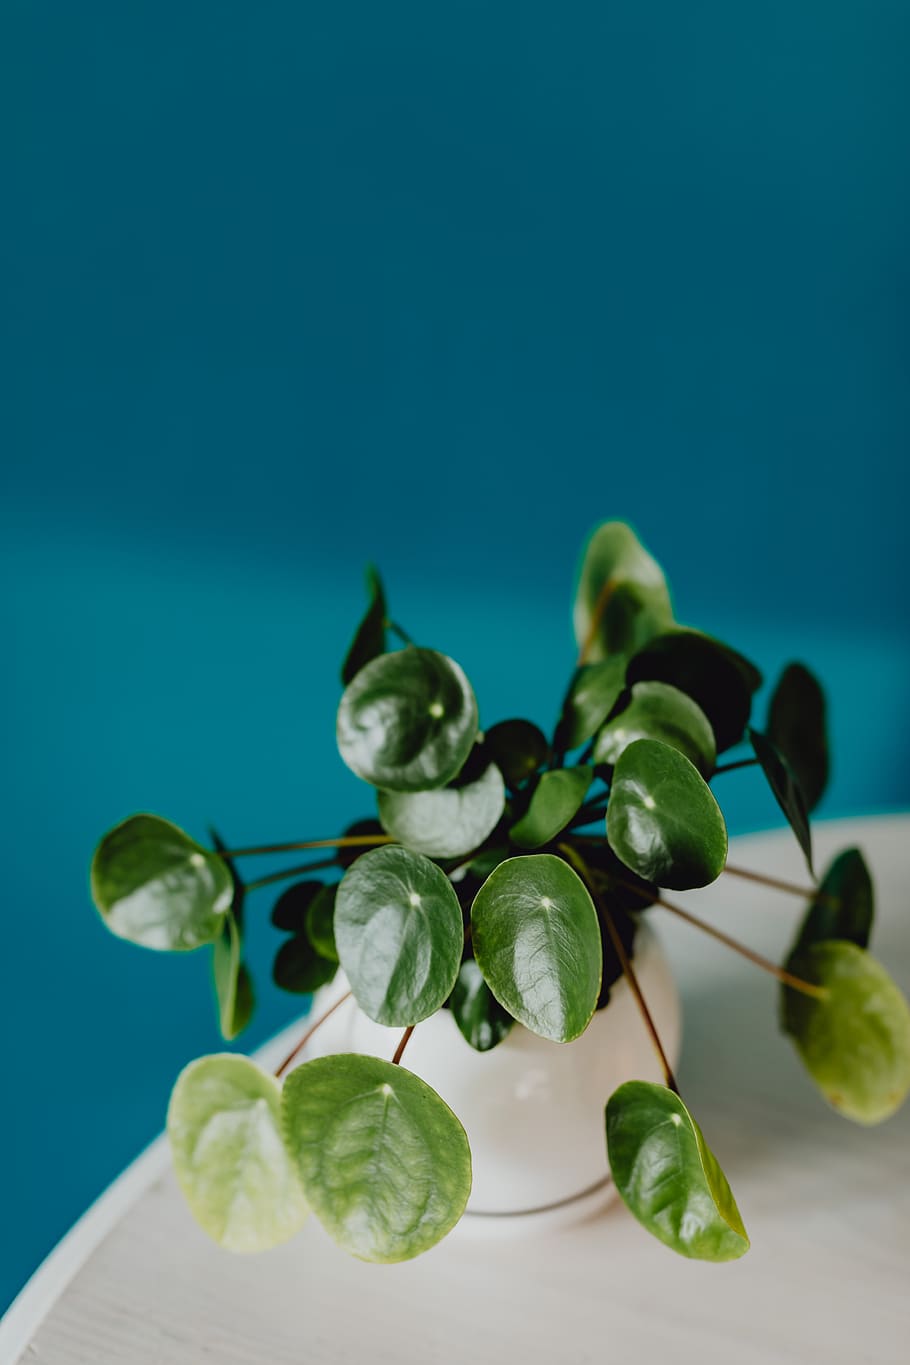 planta, verde, maceta, pared azul, pequeña, Pilea, blanco, azul, hoja, parte de la planta